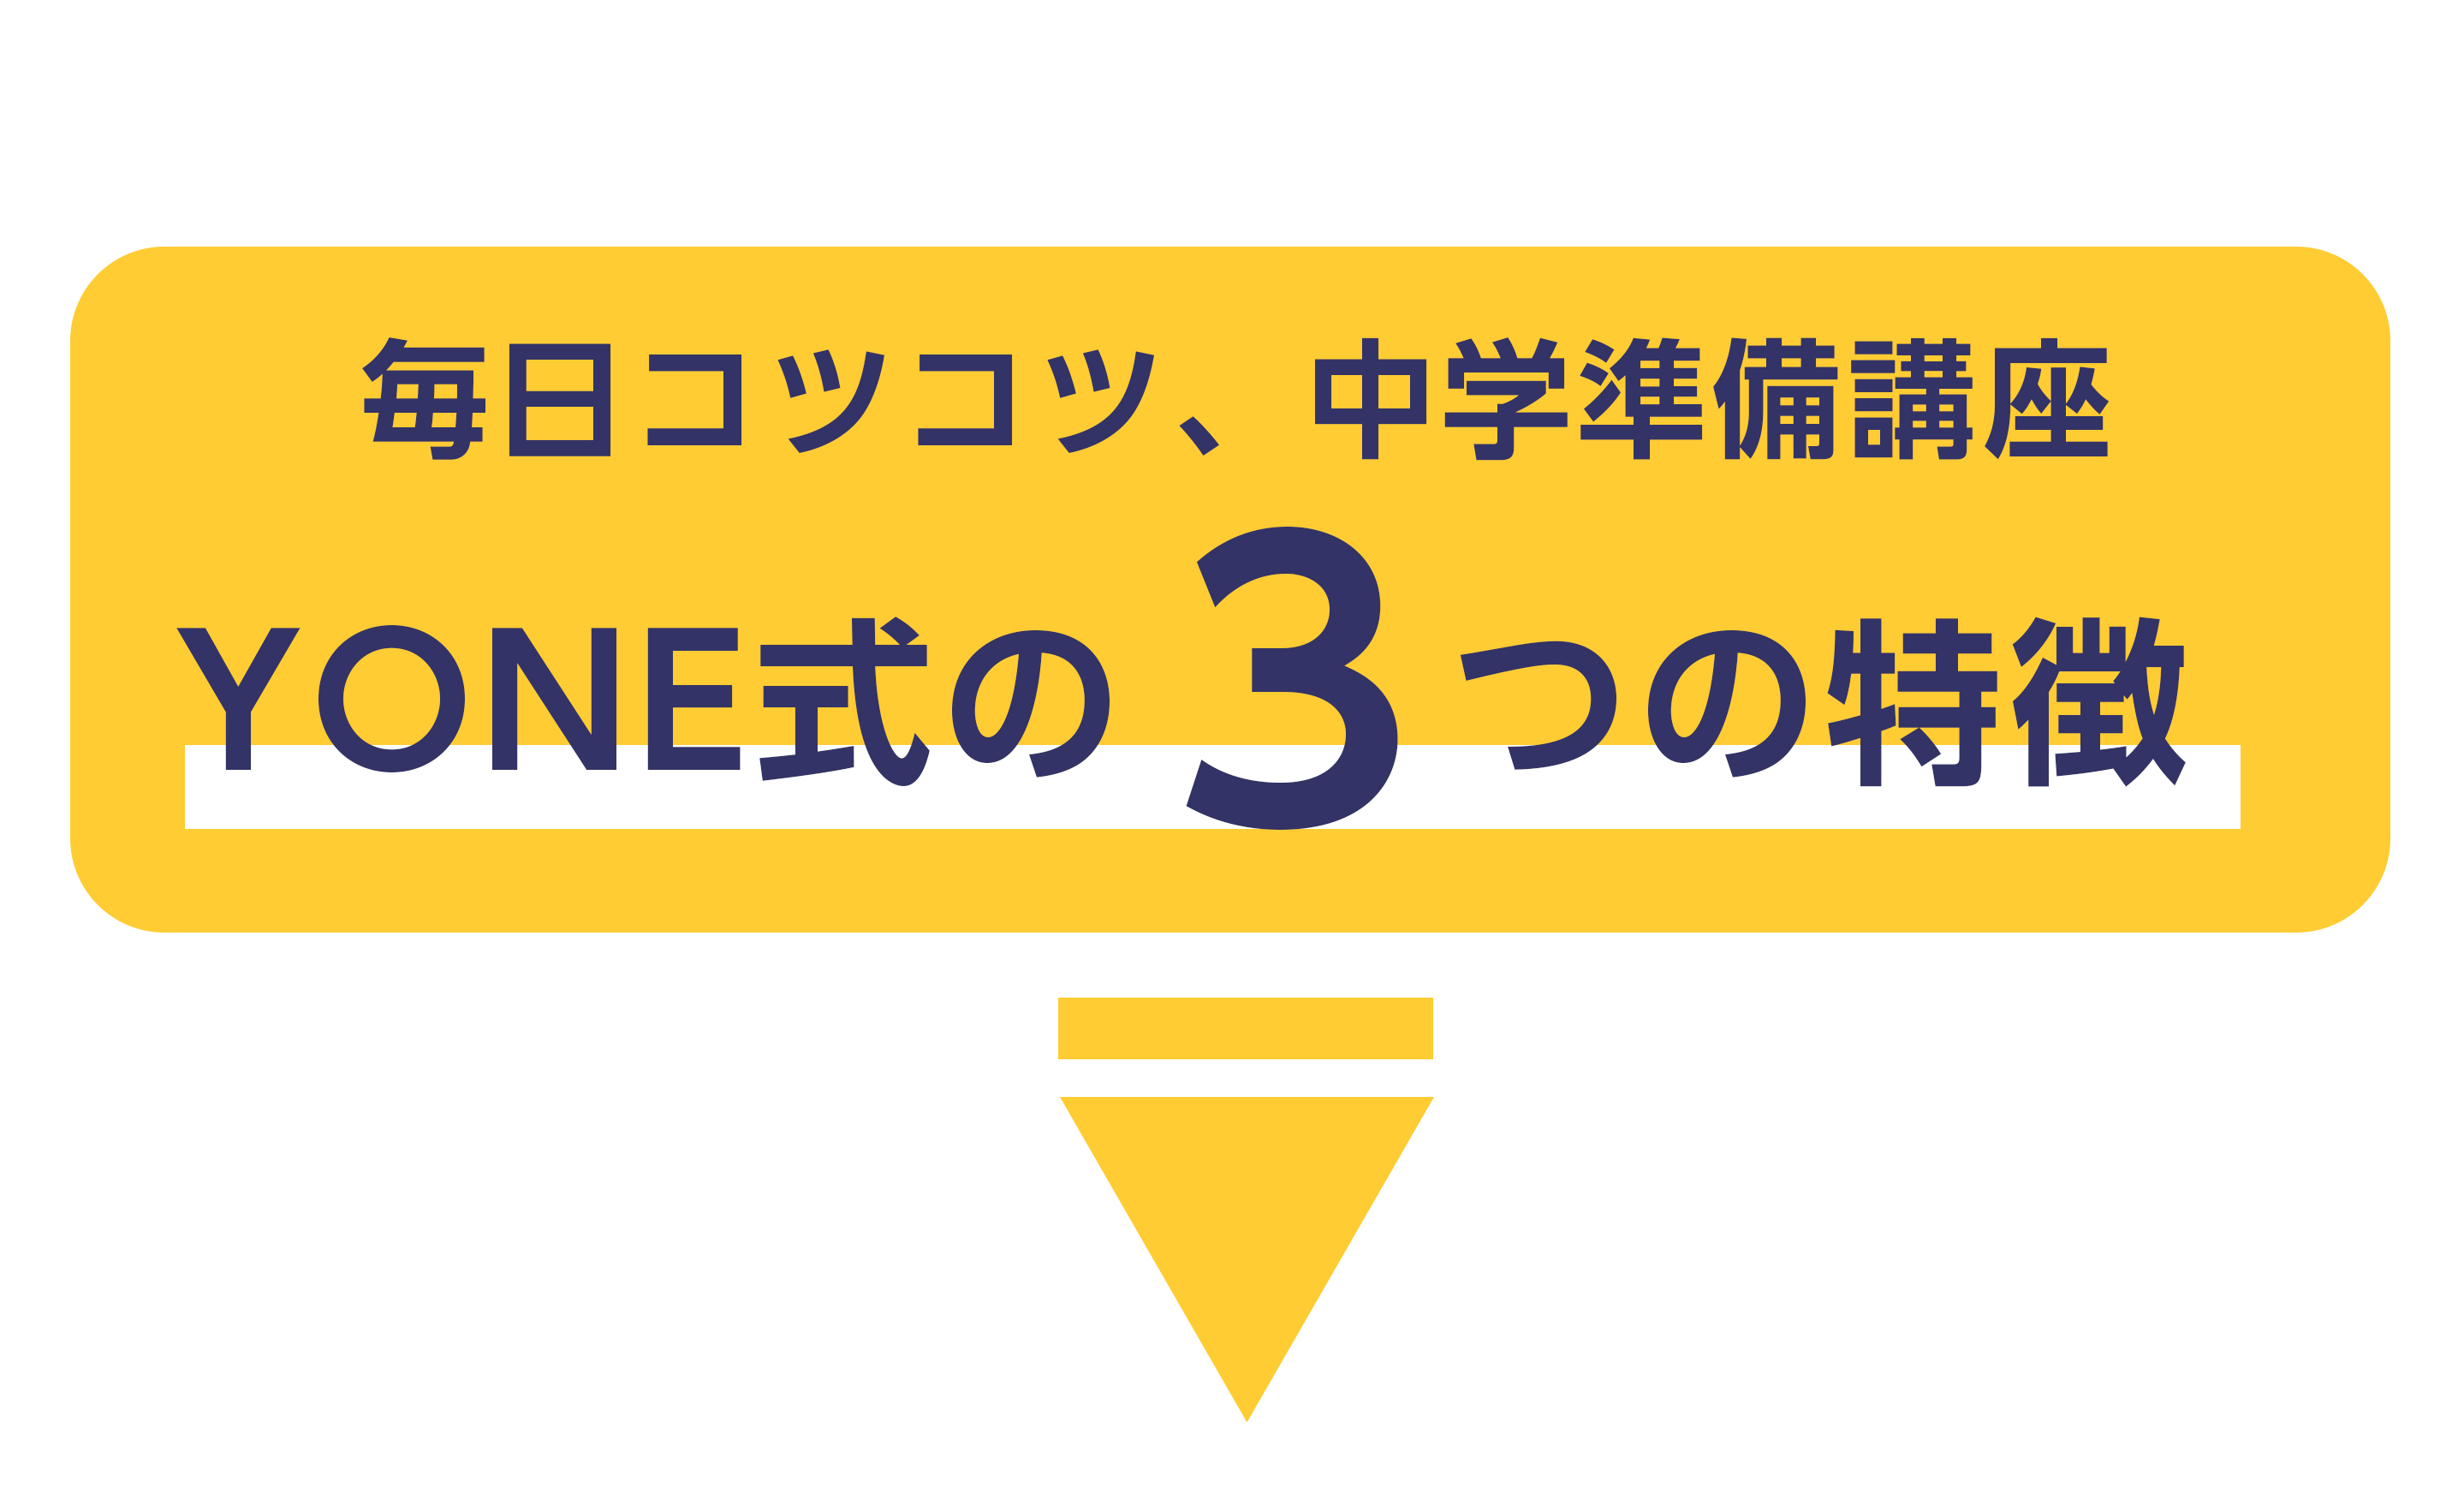 YONE式の3つの特徴